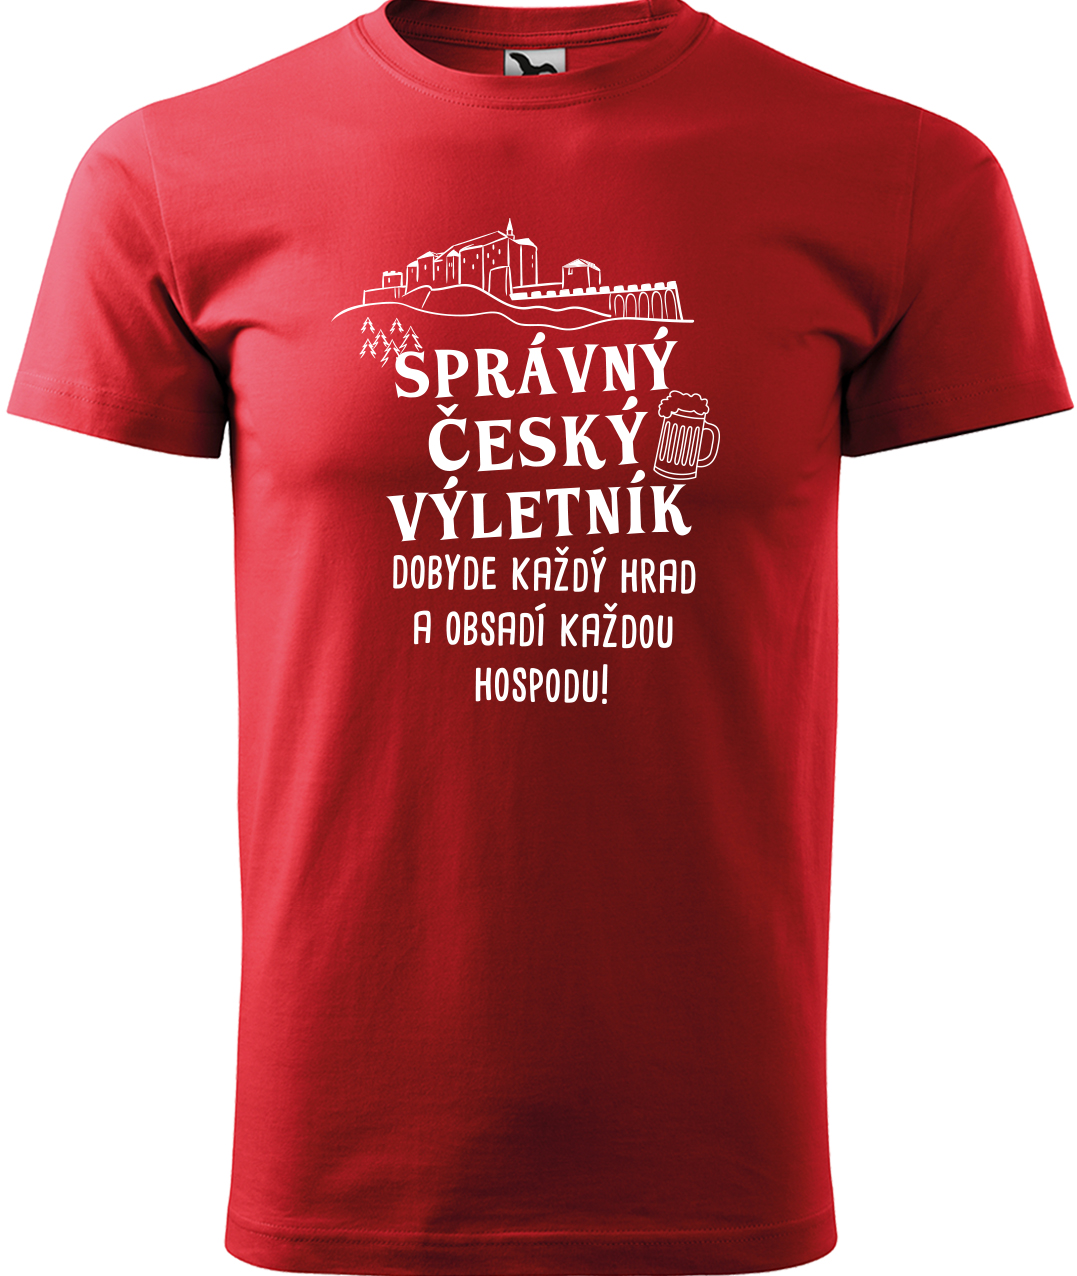 Pánské cestovatelské tričko - Správný český výletník Velikost: L, Barva: Červená (07), Střih: pánský